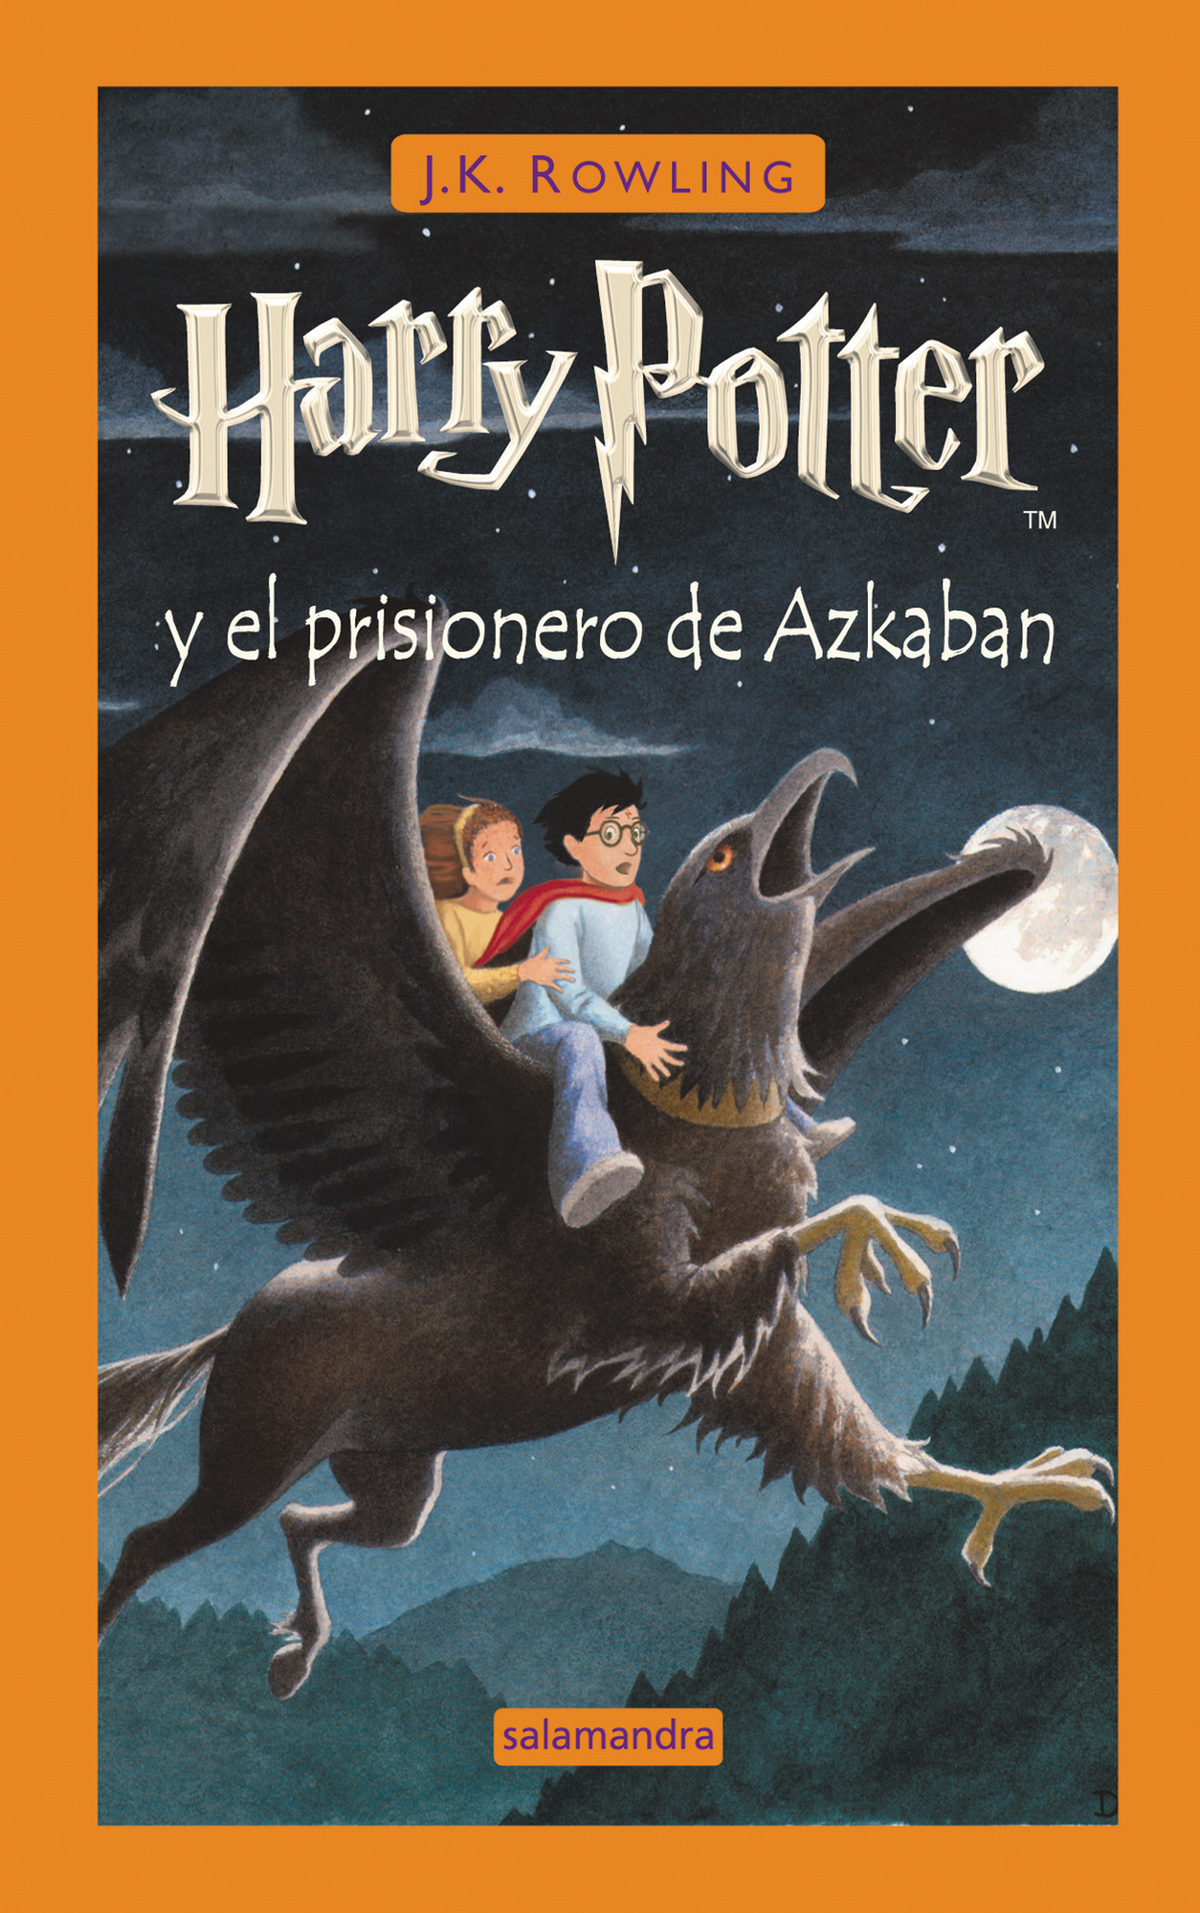 Libro Harry Potter y el cáliz de fuego (edición Gryffindor del 20°  aniversario) (Harry Potter 4) De J. K. Rowling - Buscalibre